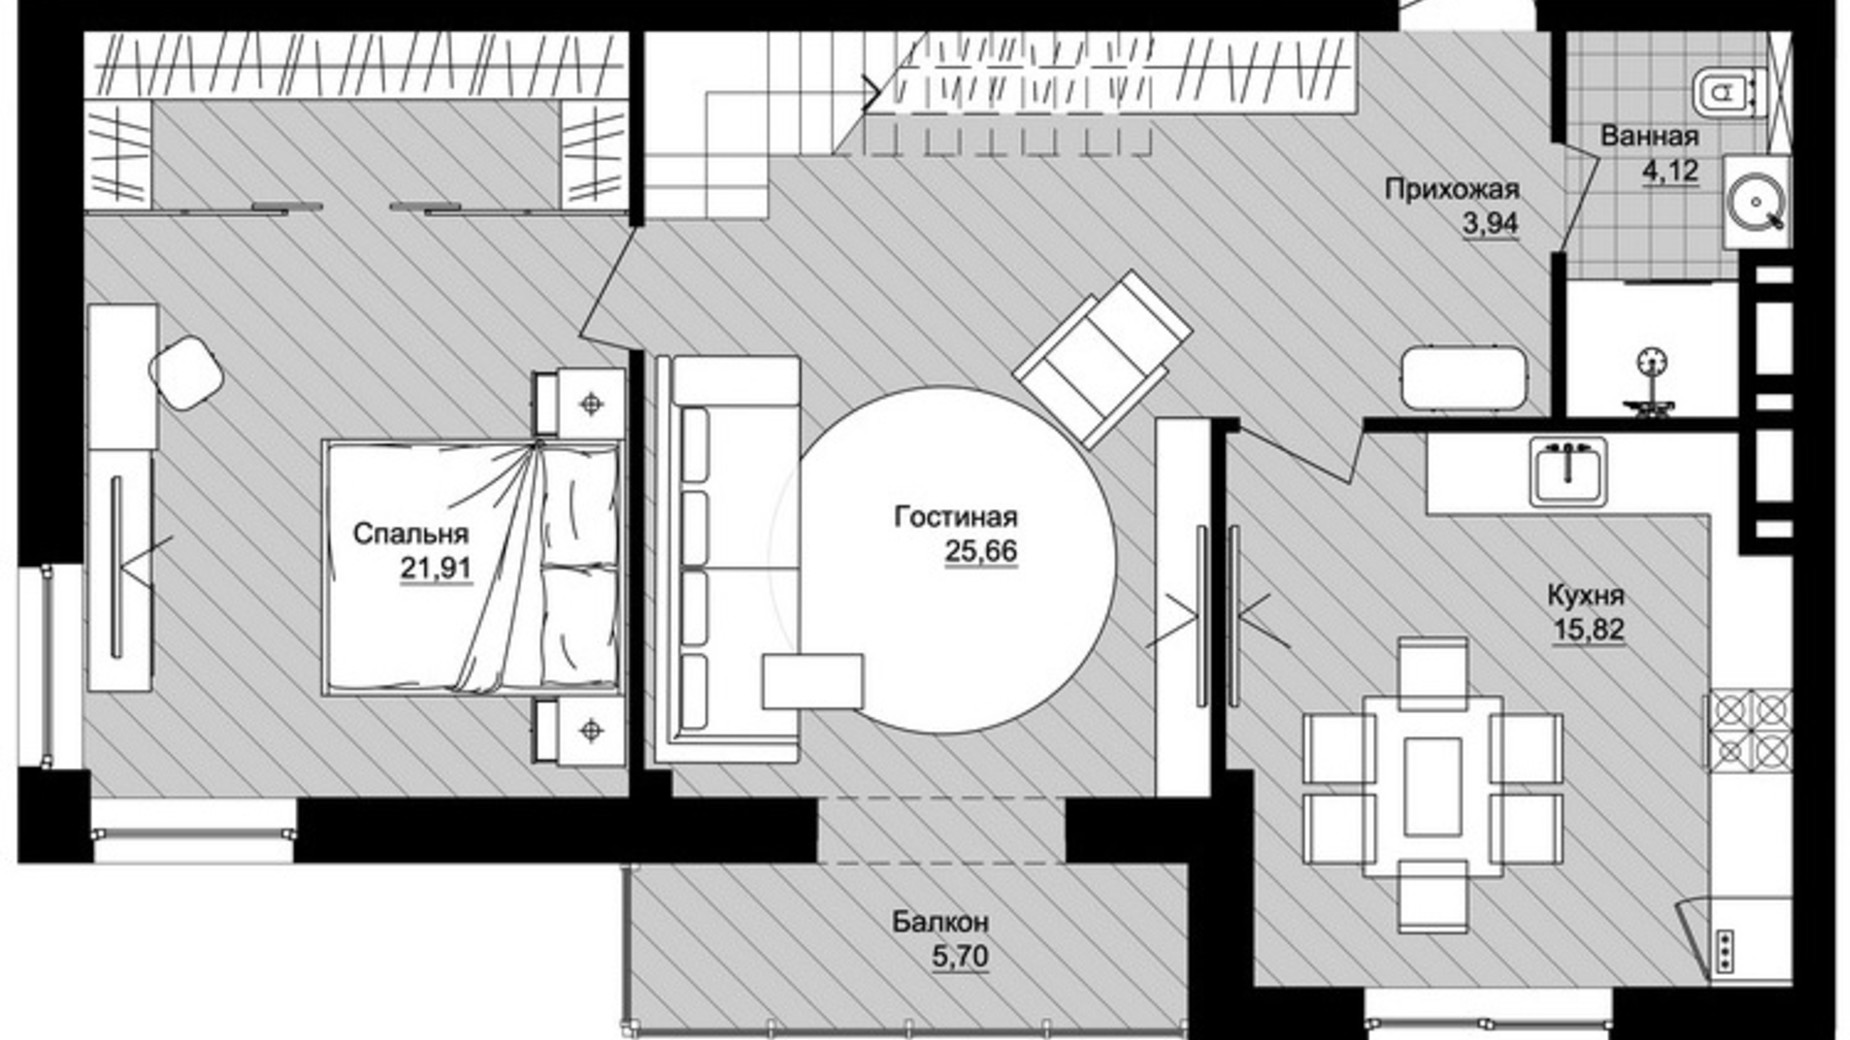 Планировка много­уровневой квартиры в ЖК Новый Град 156.03 м², фото 605807